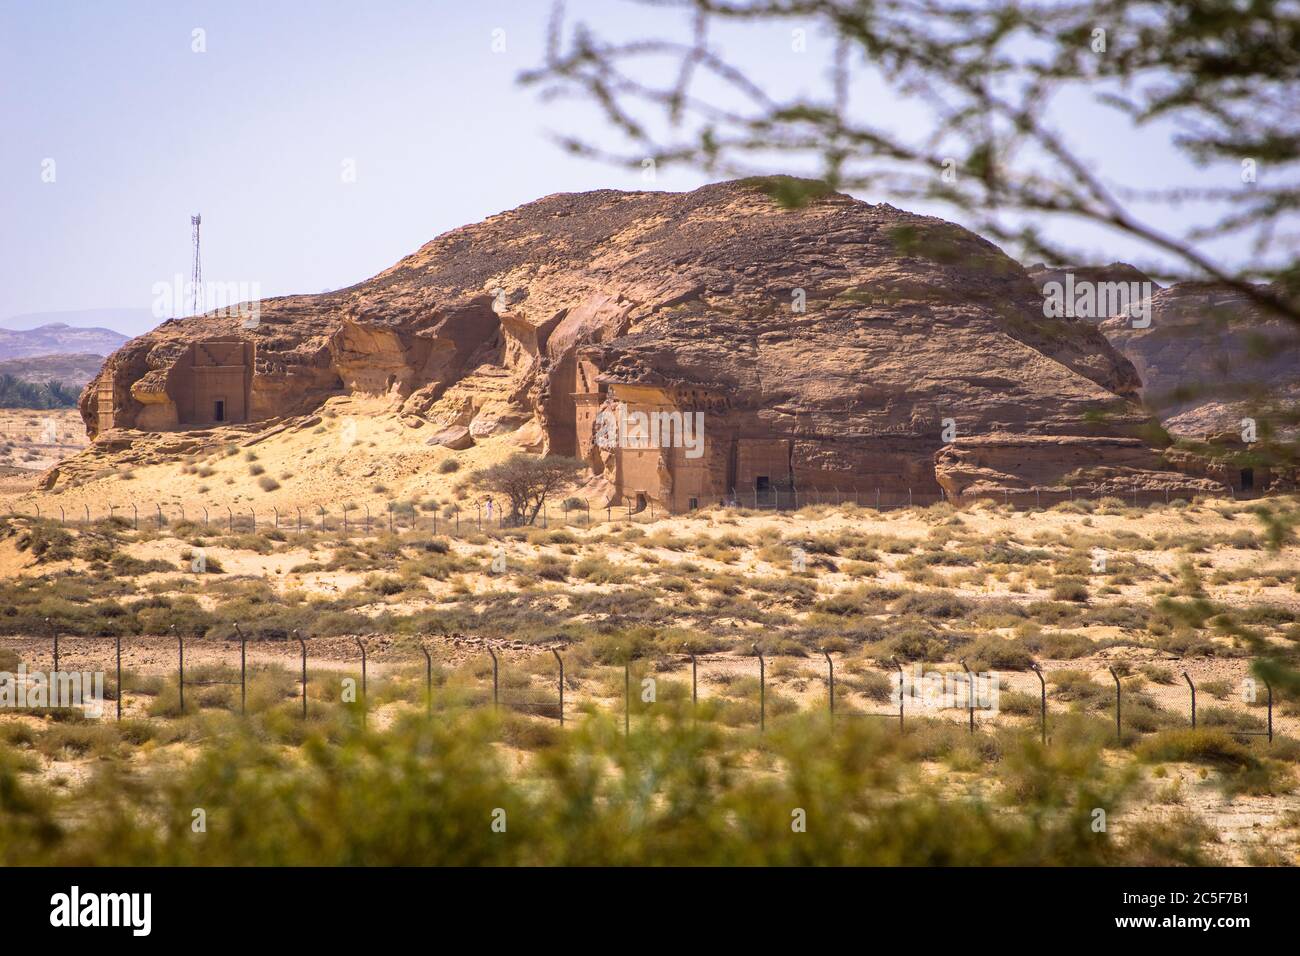 Varias tumbas monumentales cortadas en roca, anheladas por los nabateos en el sitio arqueológico de Madain Salih Foto de stock